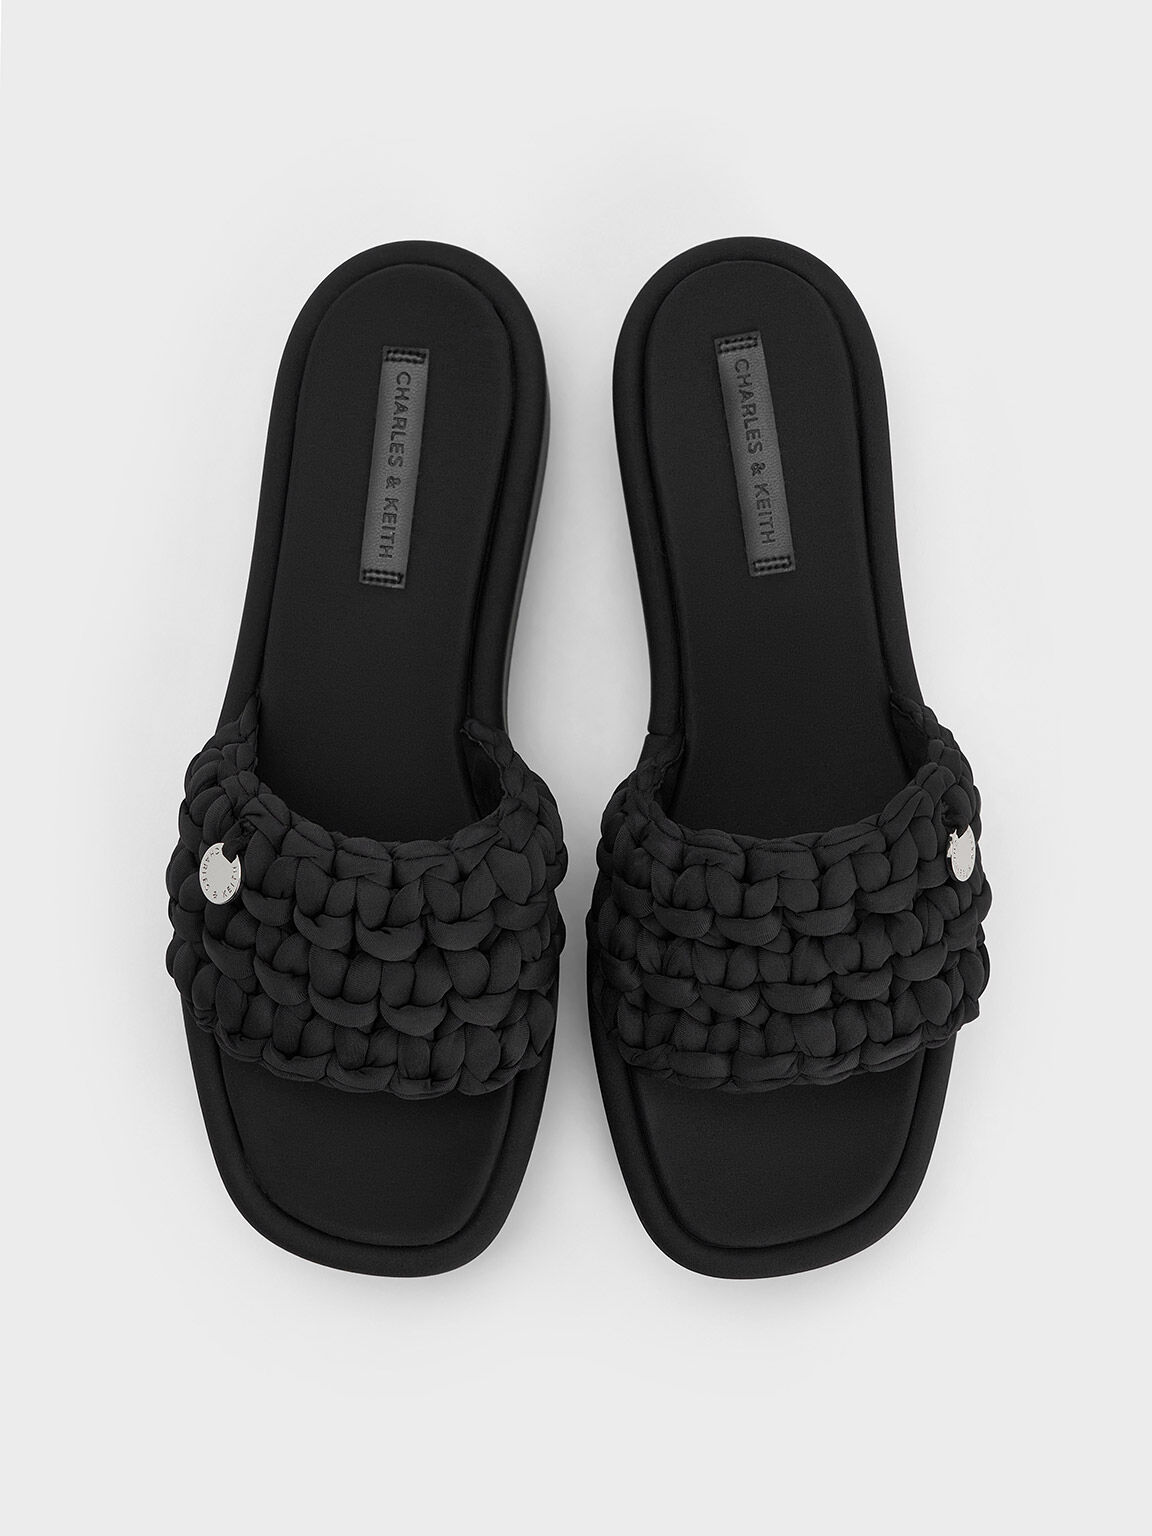 Sandal Flatform Woven, Black Textured, hi-res